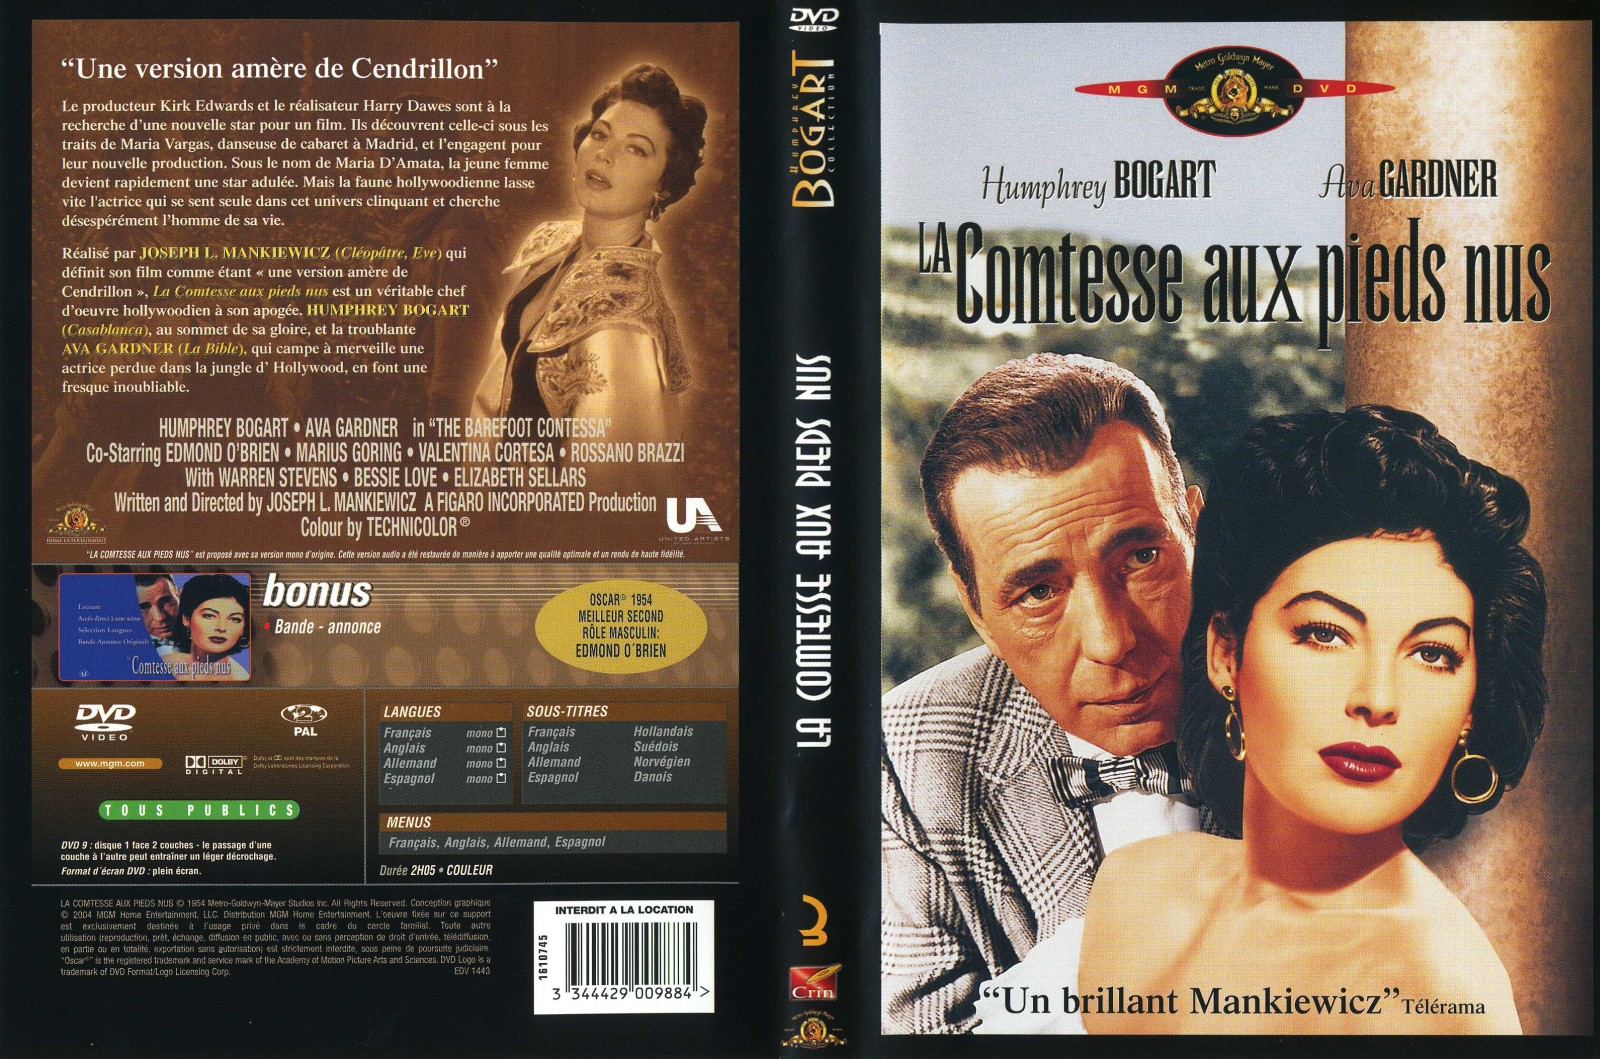 Jaquette DVD La comtesse aux pieds nus v2